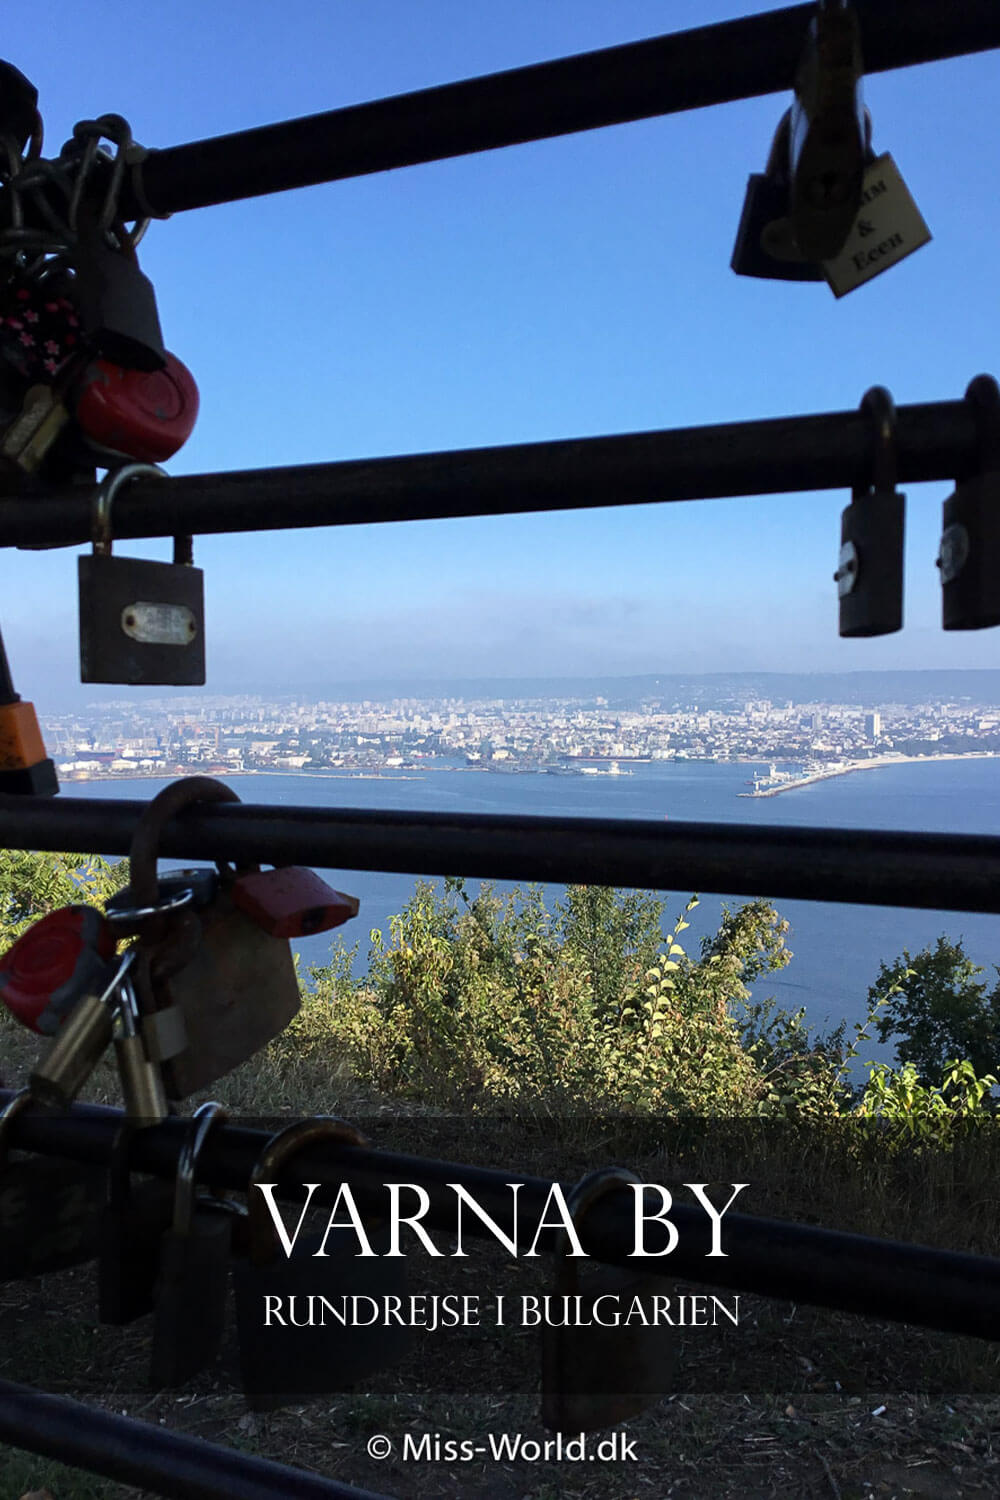 Varna by Rundrejse i Bulgarien | Pinterest pin